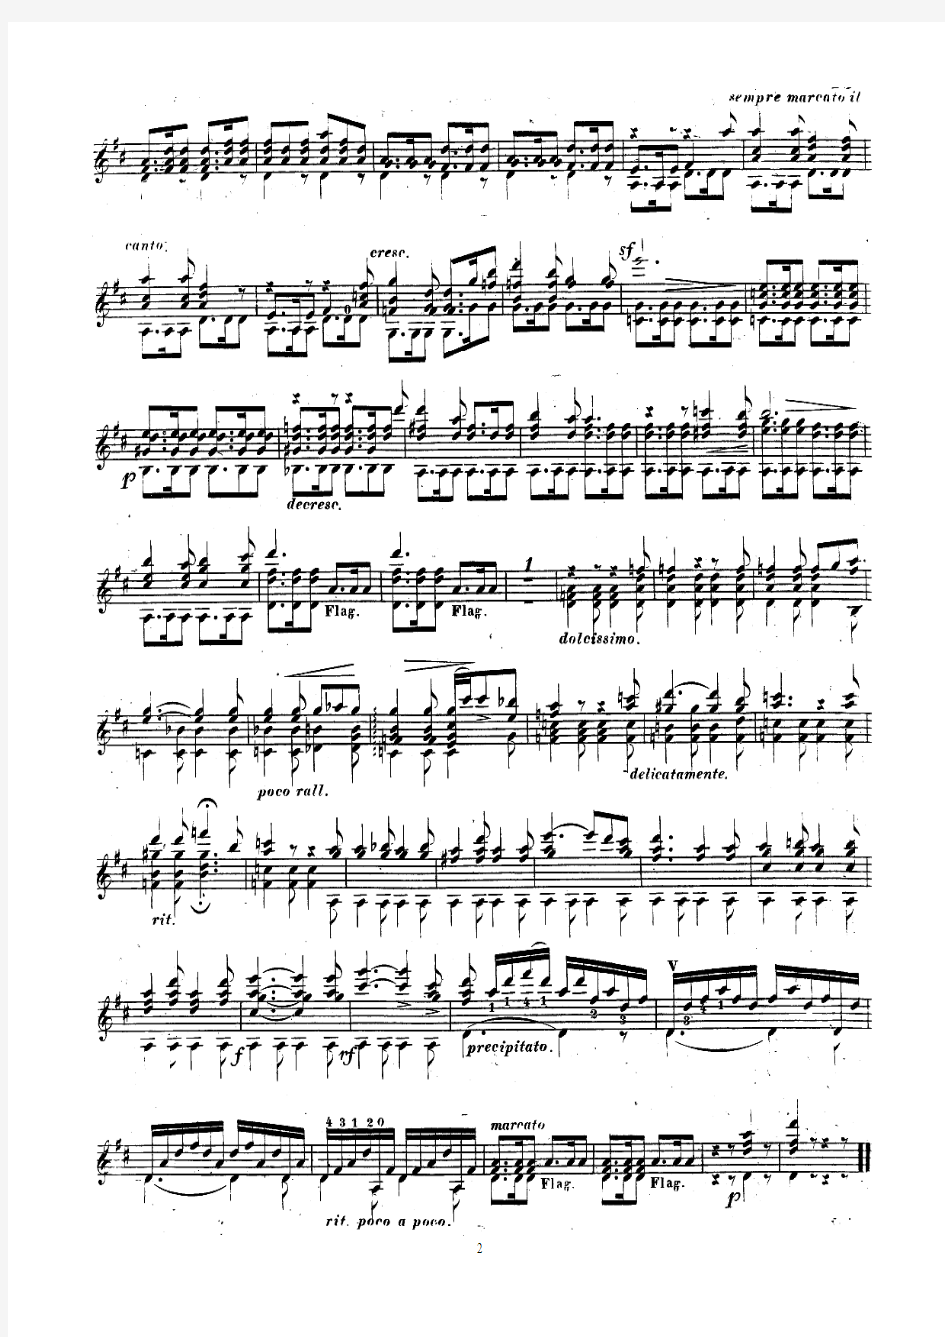 梅尔兹改编舒伯特作品《邮车》Die Post;F. Schubert (arr J. K. Mertz)古典吉他谱